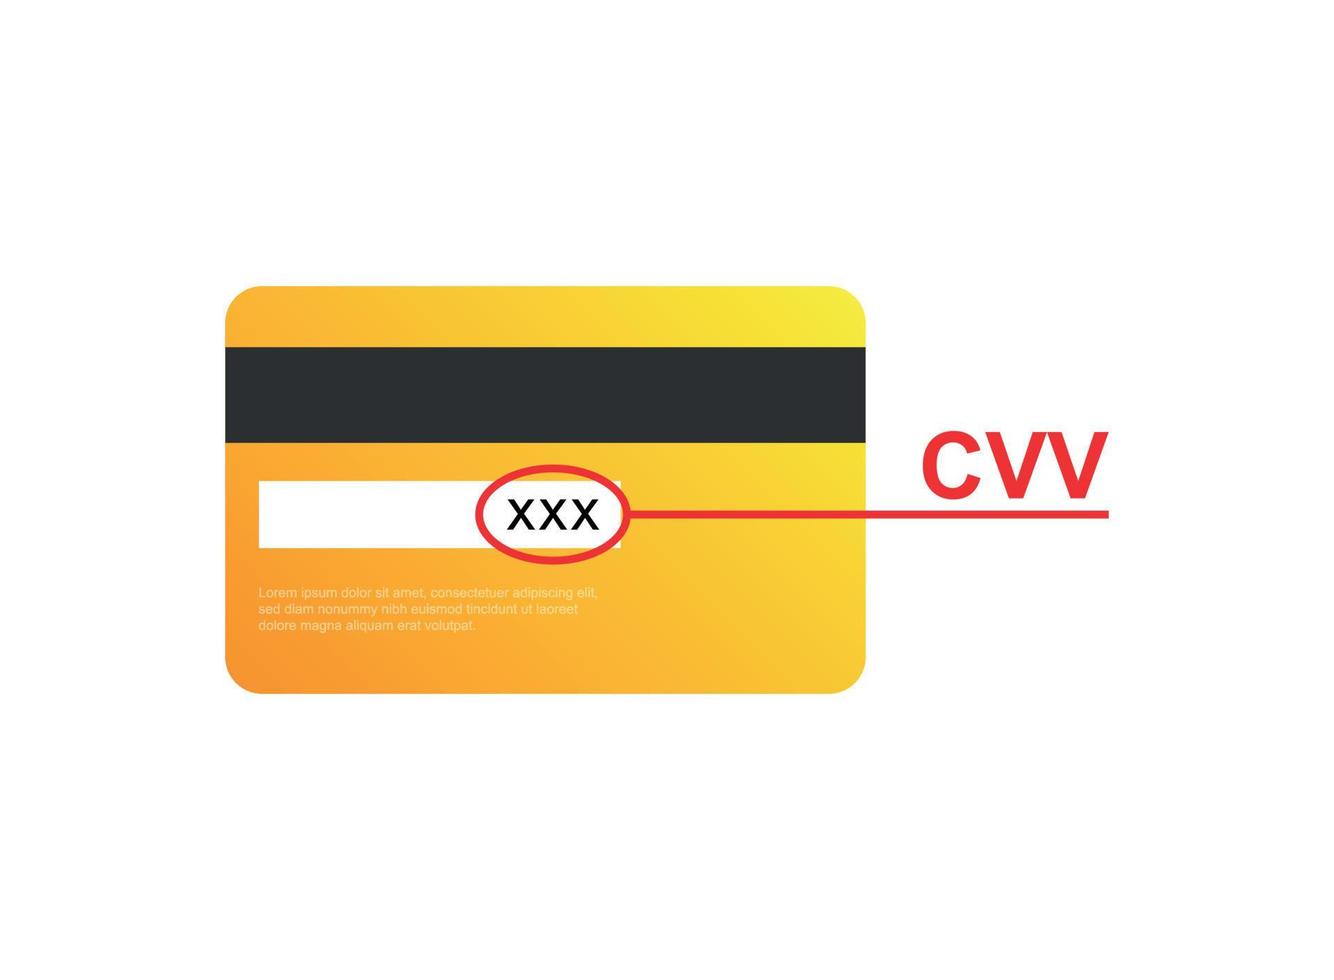 credit kaart icoon in vlak stijl. cvv verificatie code vector illustratie Aan geïsoleerd achtergrond. betaling teken bedrijf concept.